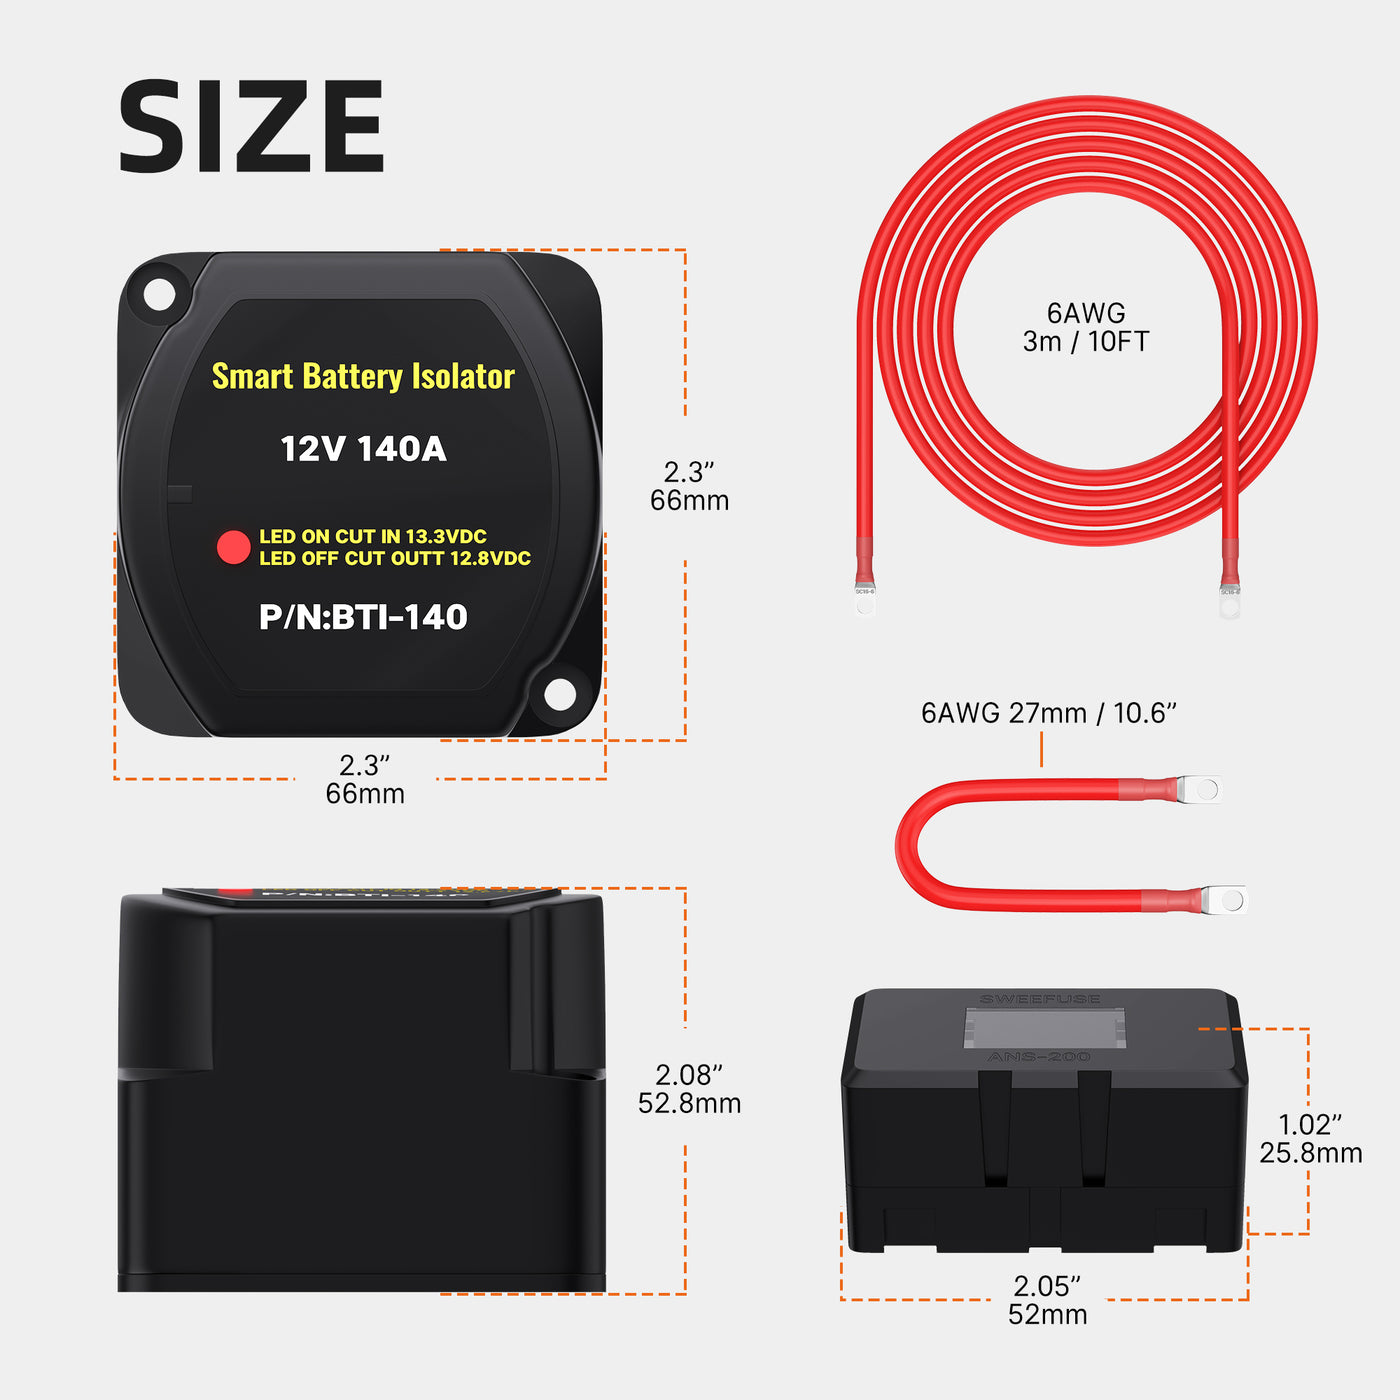 ASW-A401-Kit 140Amp 12VDC VSR Dual Smart Battery Isolator Kit Size